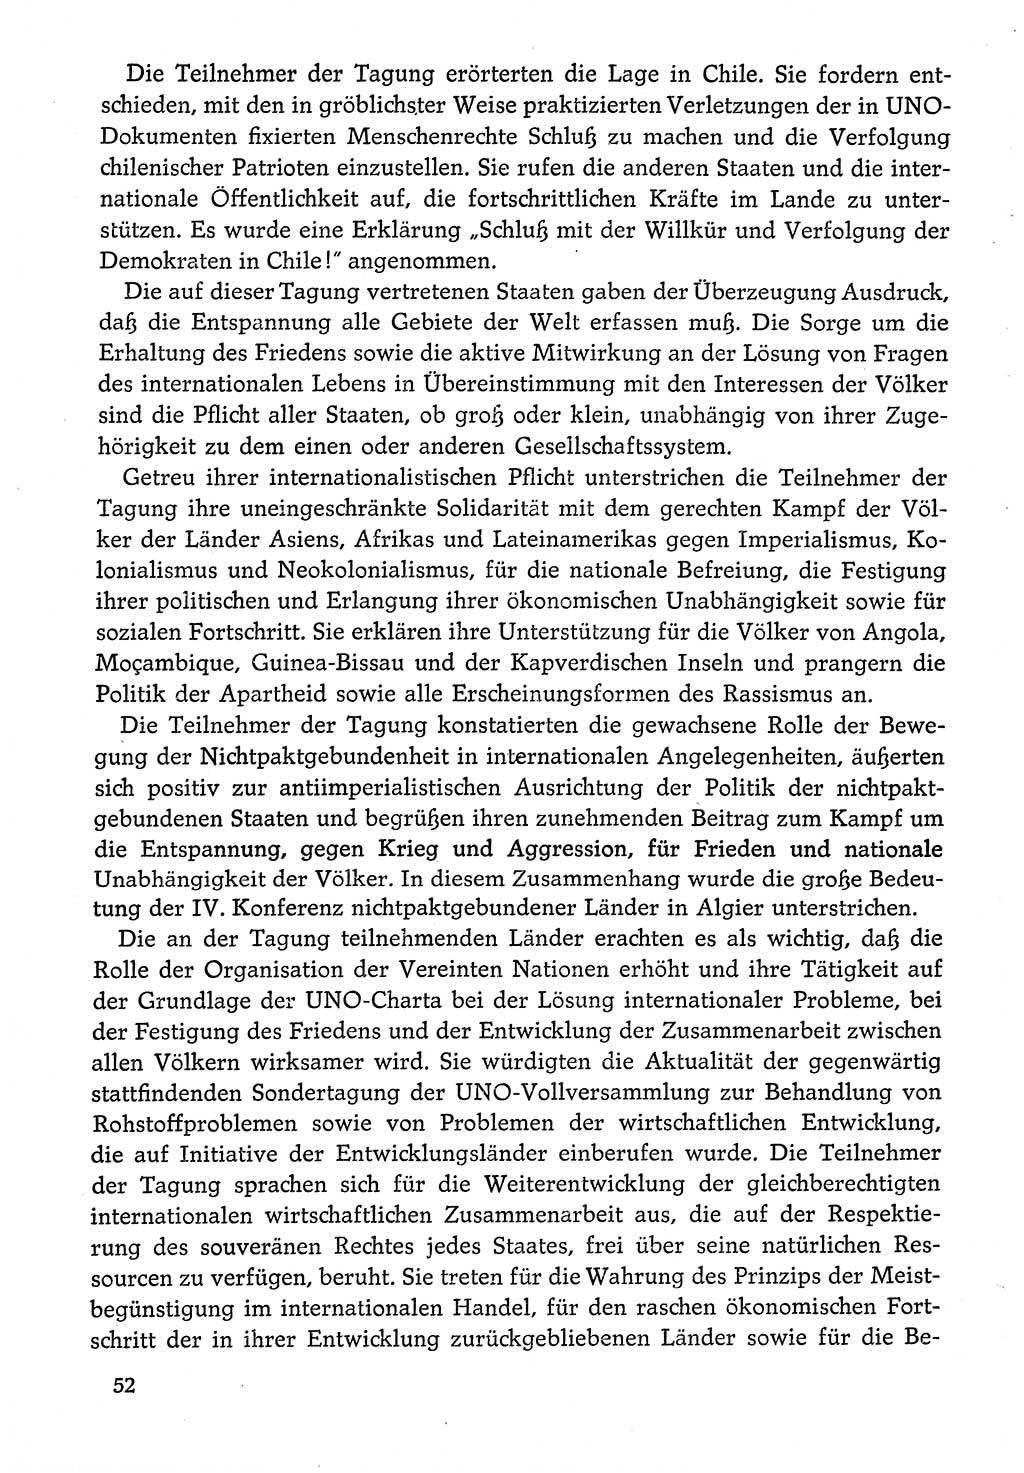 Dokumente der Sozialistischen Einheitspartei Deutschlands (SED) [Deutsche Demokratische Republik (DDR)] 1974-1975, Seite 52 (Dok. SED DDR 1978, Bd. ⅩⅤ, S. 52)